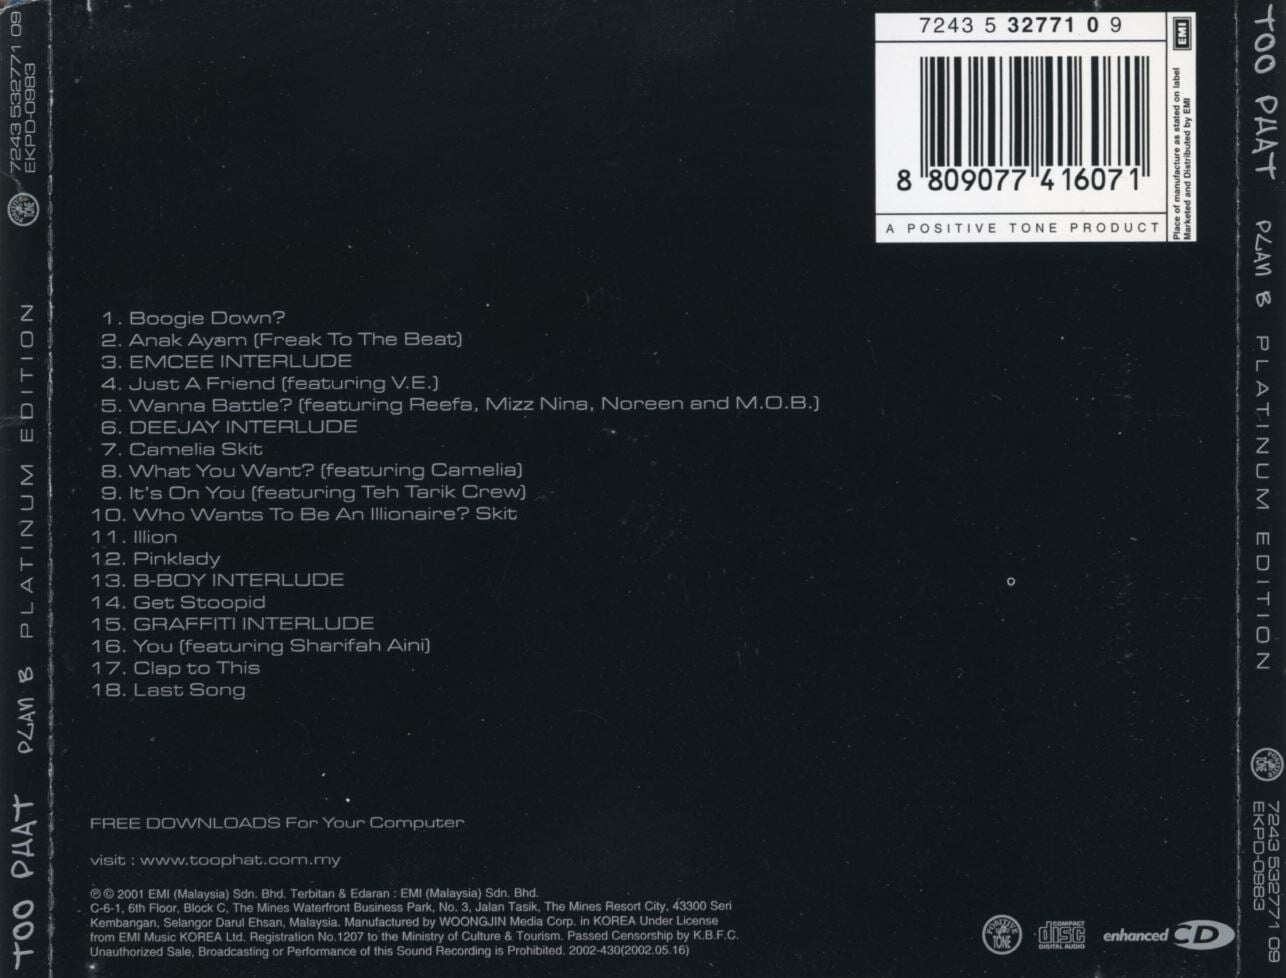 투 펫,플랜 비 - Too Phat Plan B - Platinum Edition 2Cds 